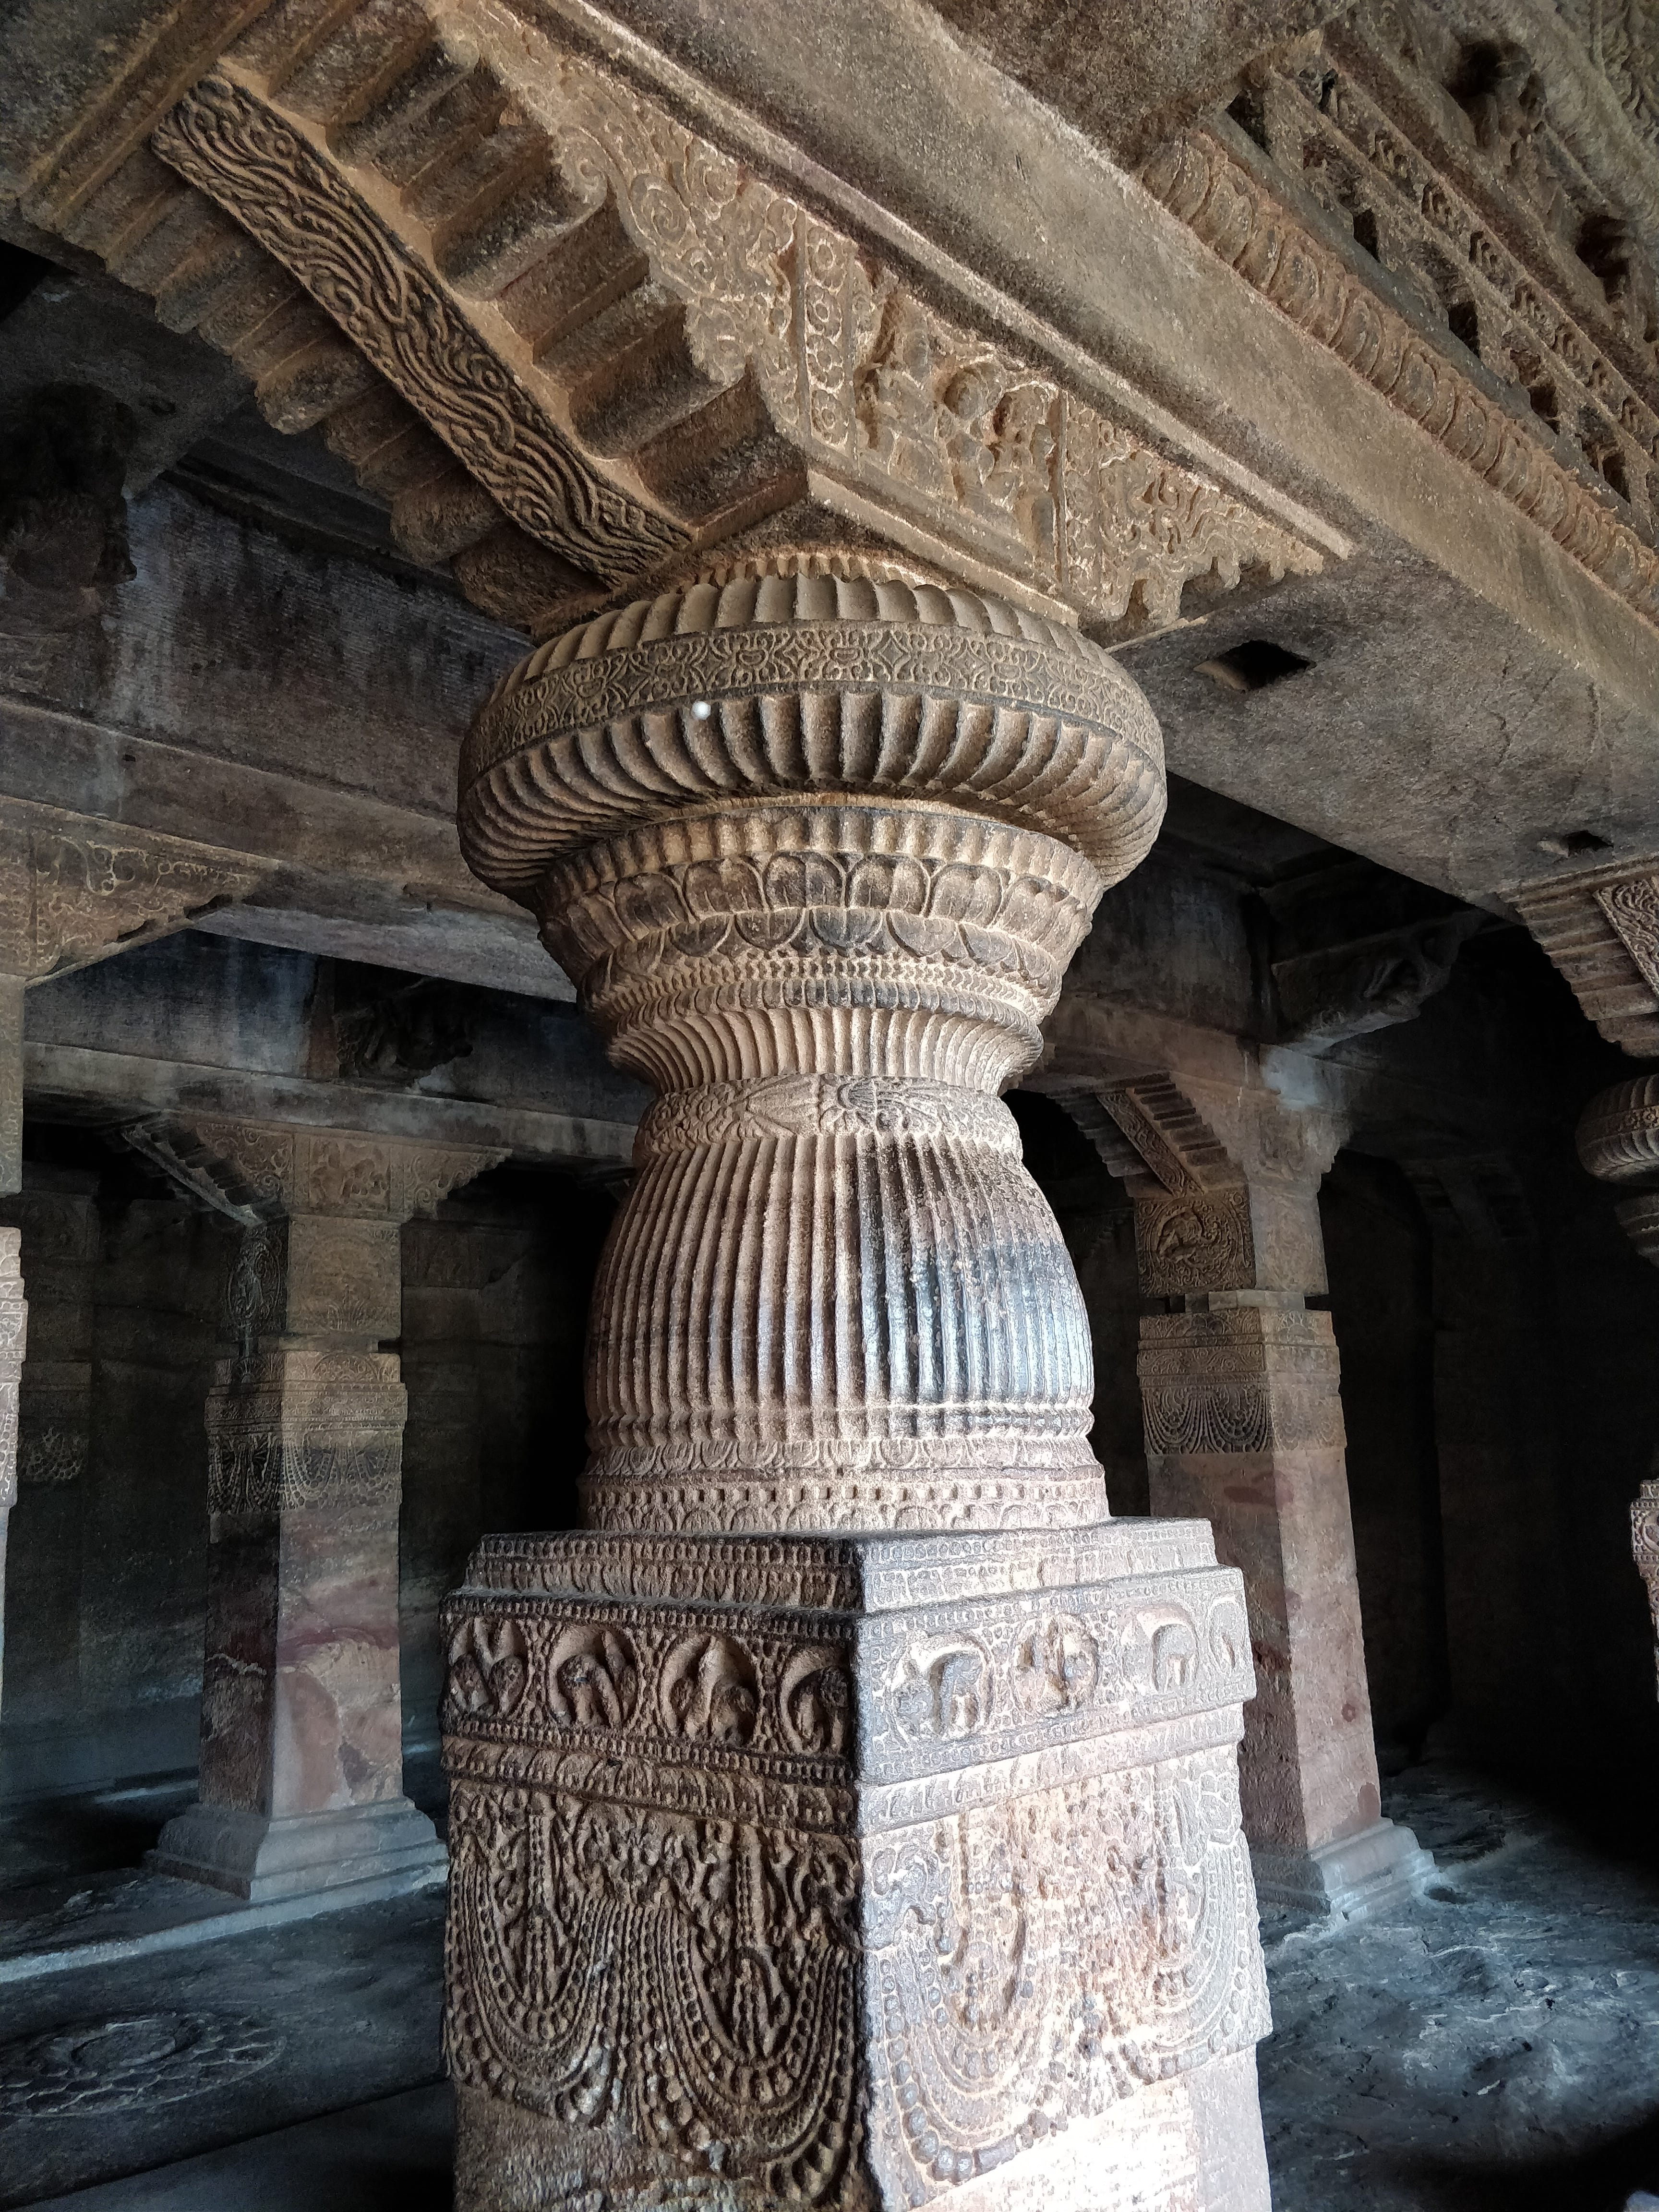 another pillar